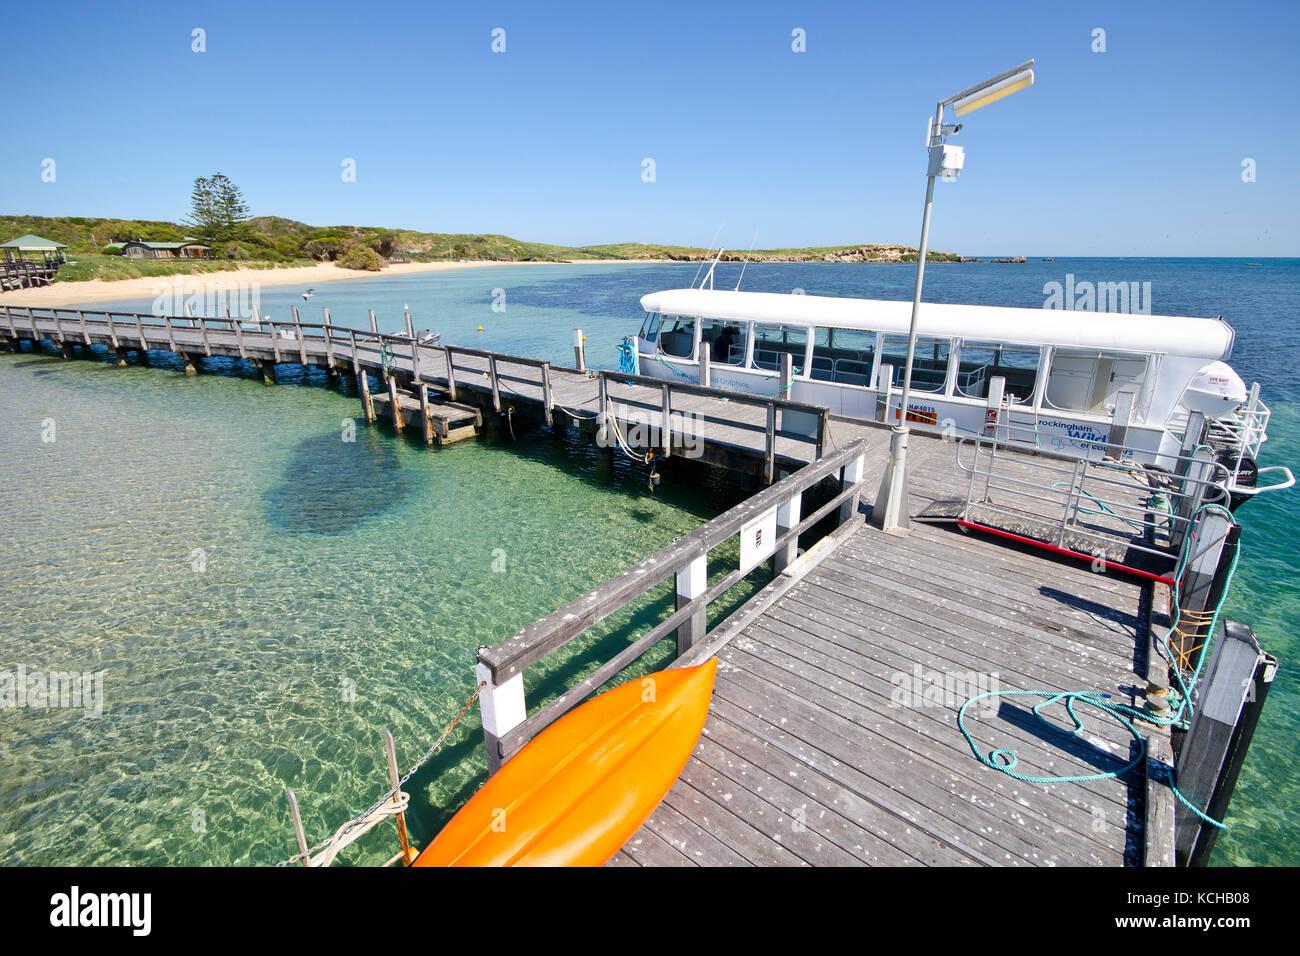 Anlegestelle und Fähre auf Penguin Island, Shoalwater Islands Marine Park, in der Nähe von Rockingham, Western Australia, Australien Stockfoto